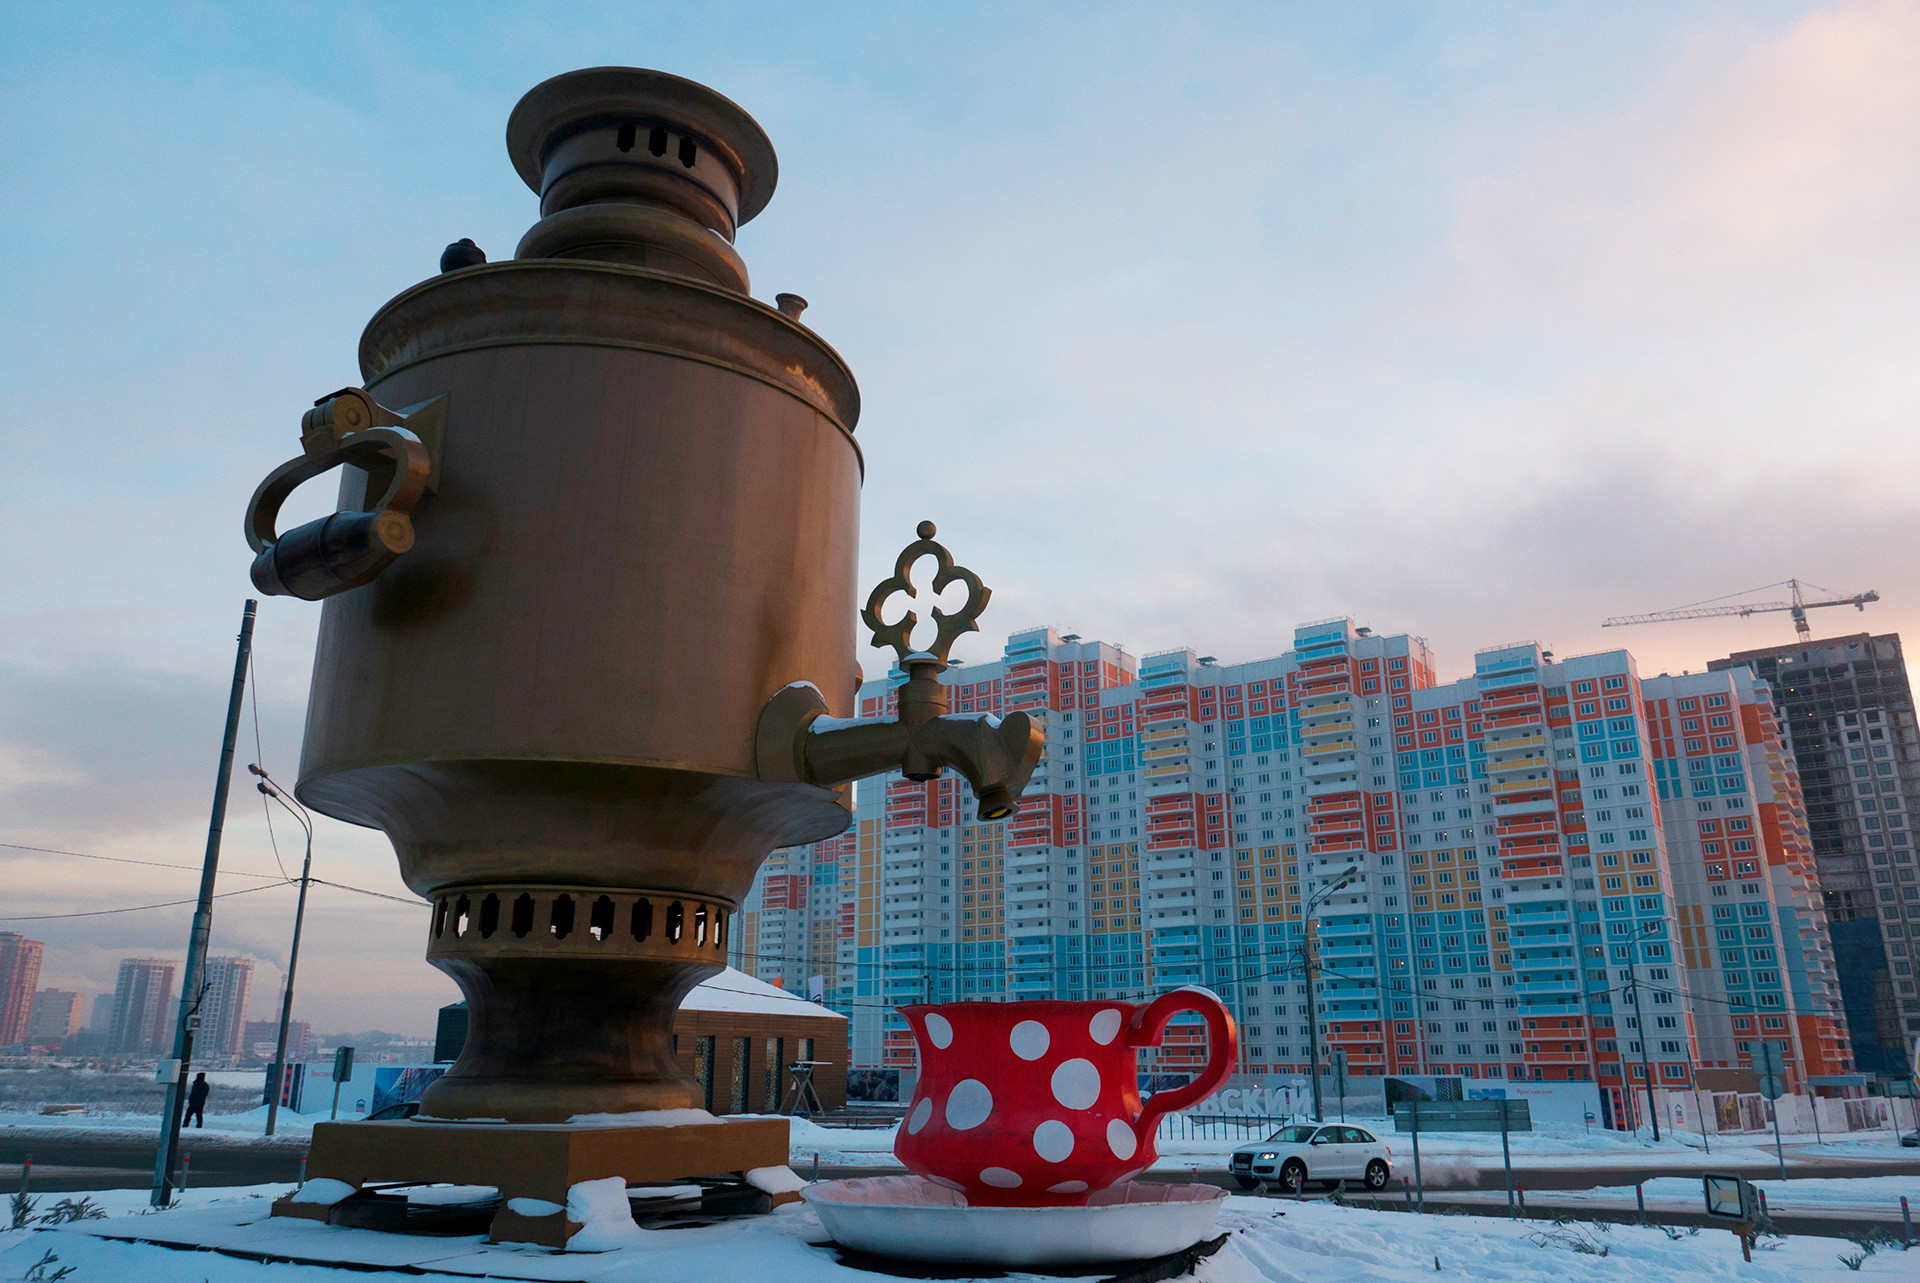 Patung samovar berukuran 8 meter di kota Mytischi, Daerah Moskow.
